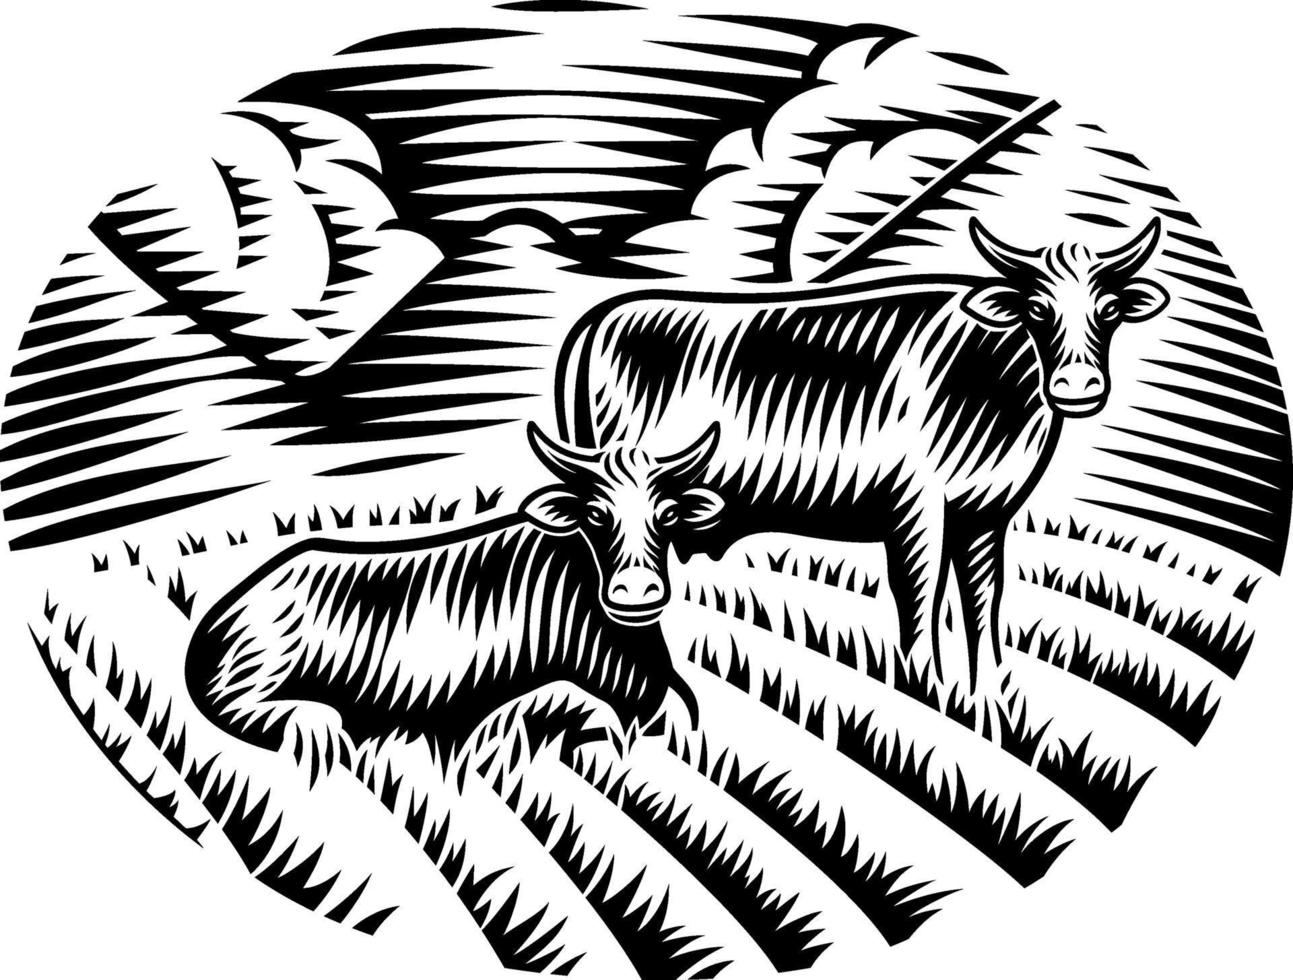 un'illustrazione vettoriale in bianco e nero di mucche sull'erba in stile incisione